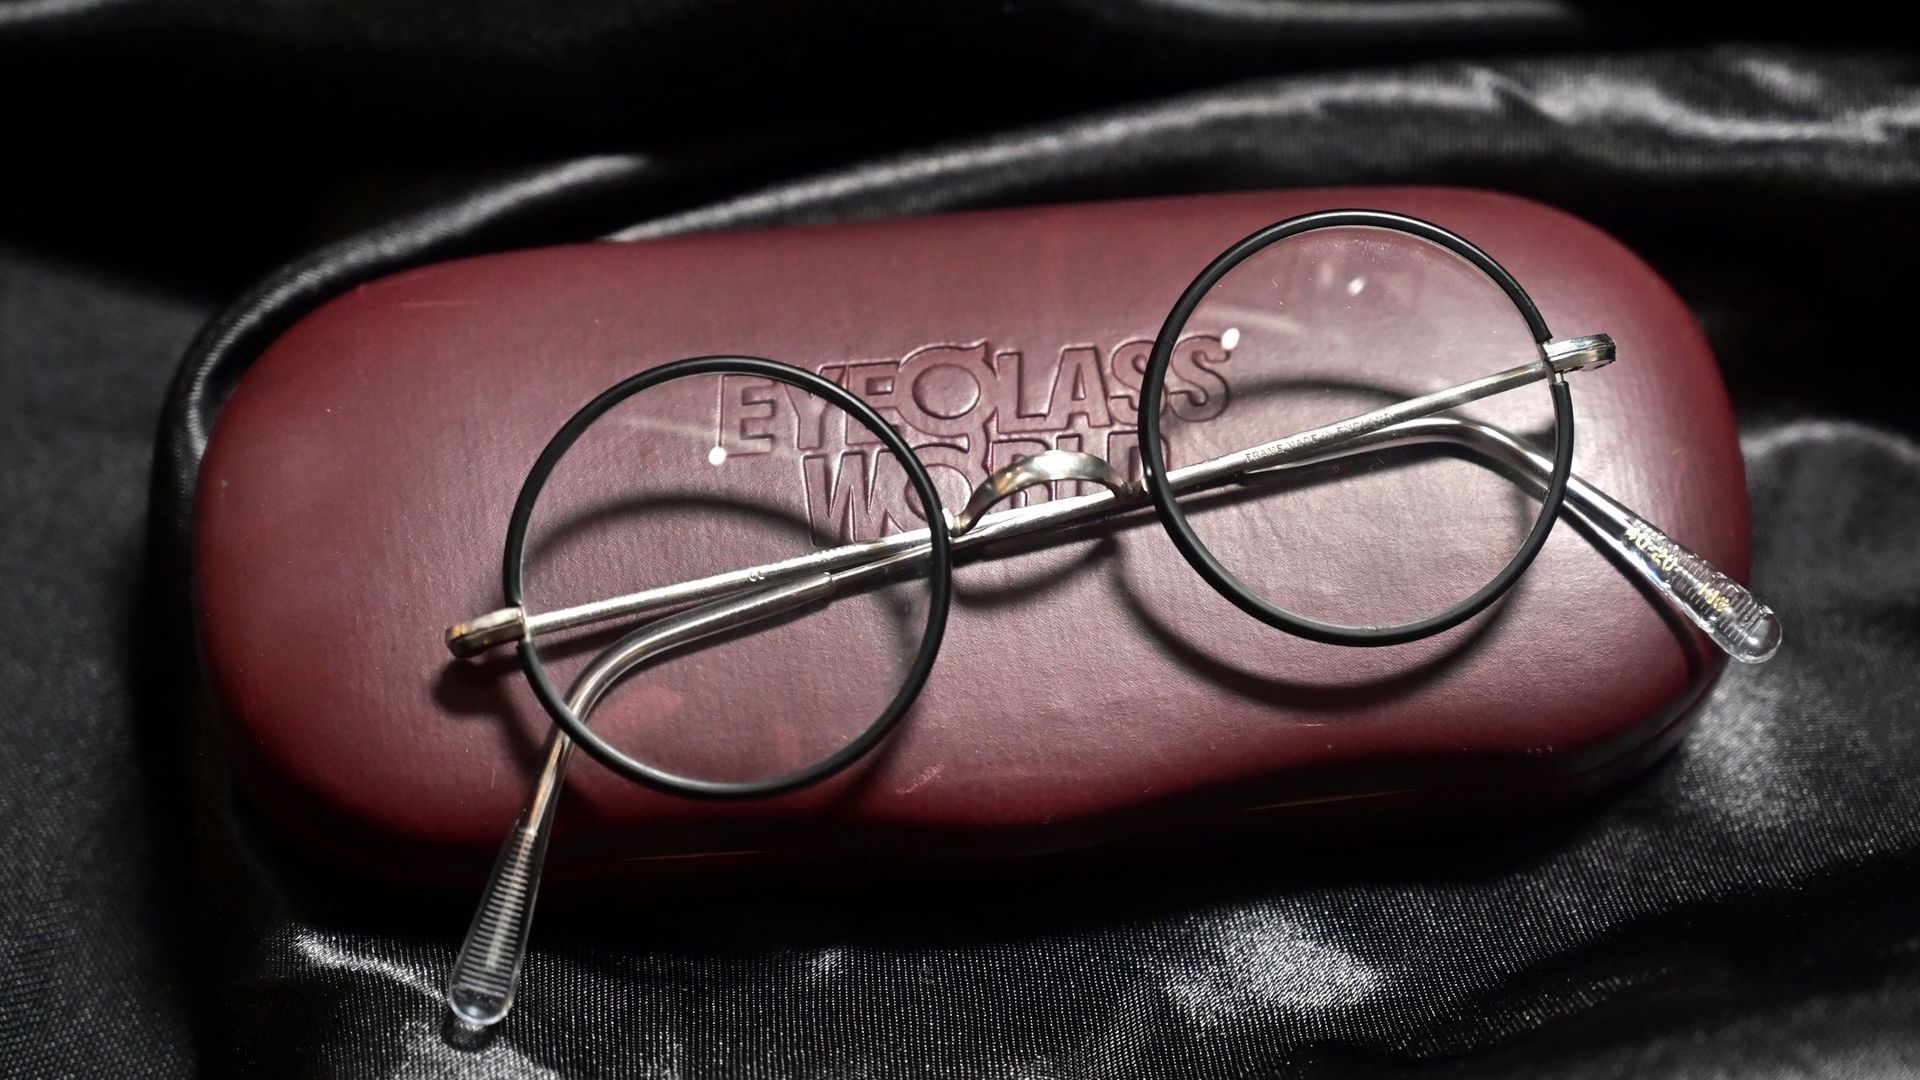 En espérant qu'Harry Potter arrivera à réparer ses lunettes sans l'aide d'Hermione